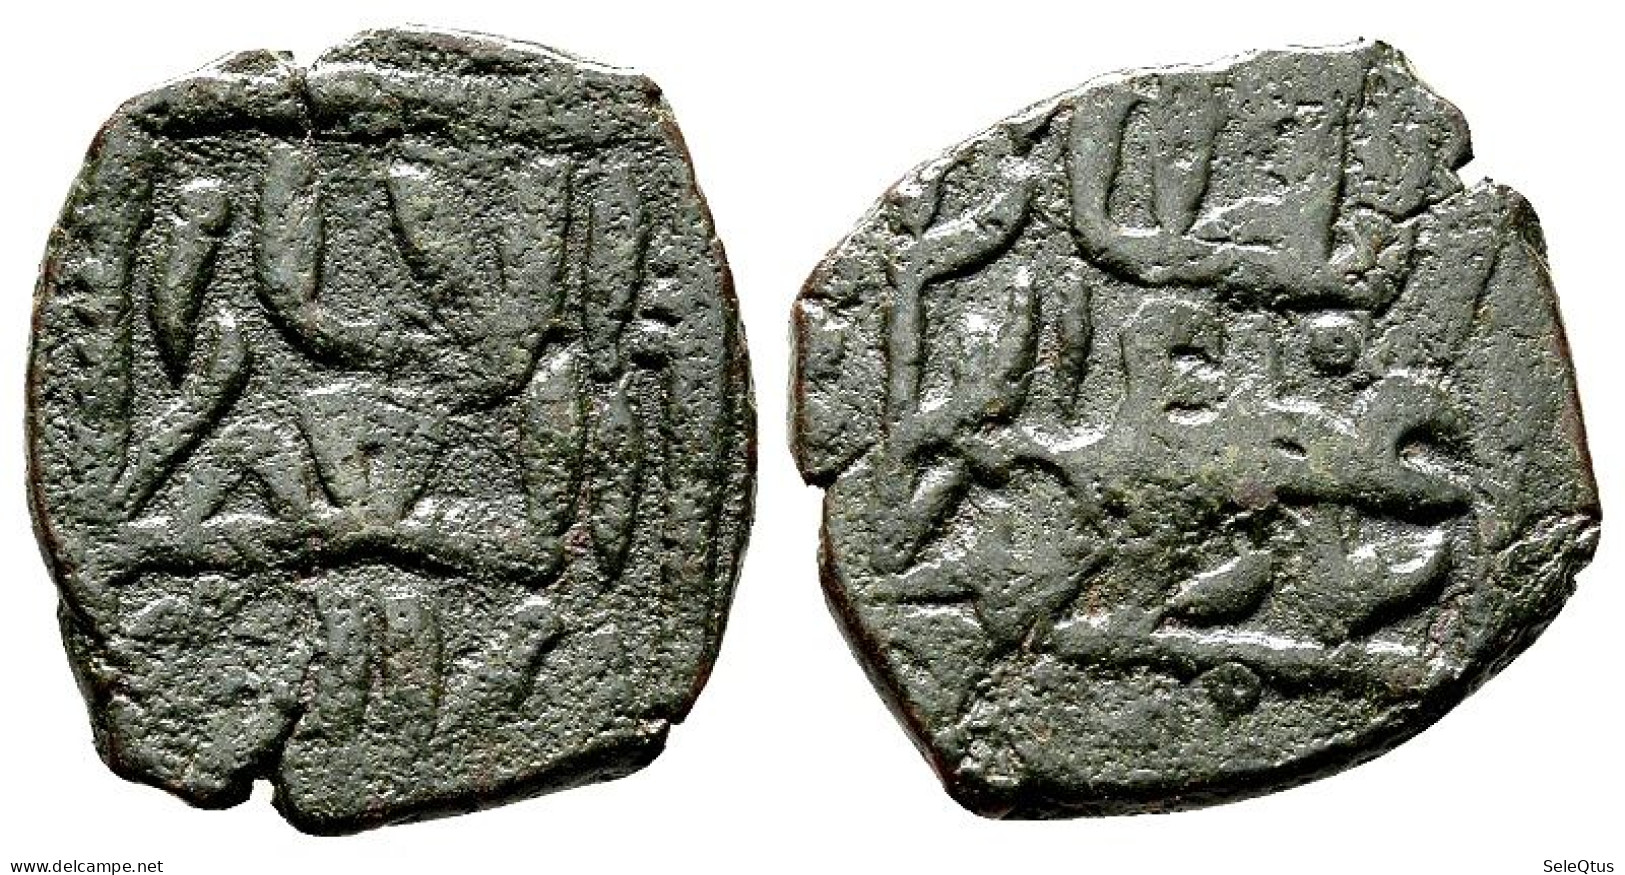 Monedas Antiguas - Islámicas (A148-008-199-1100) - Islamiques